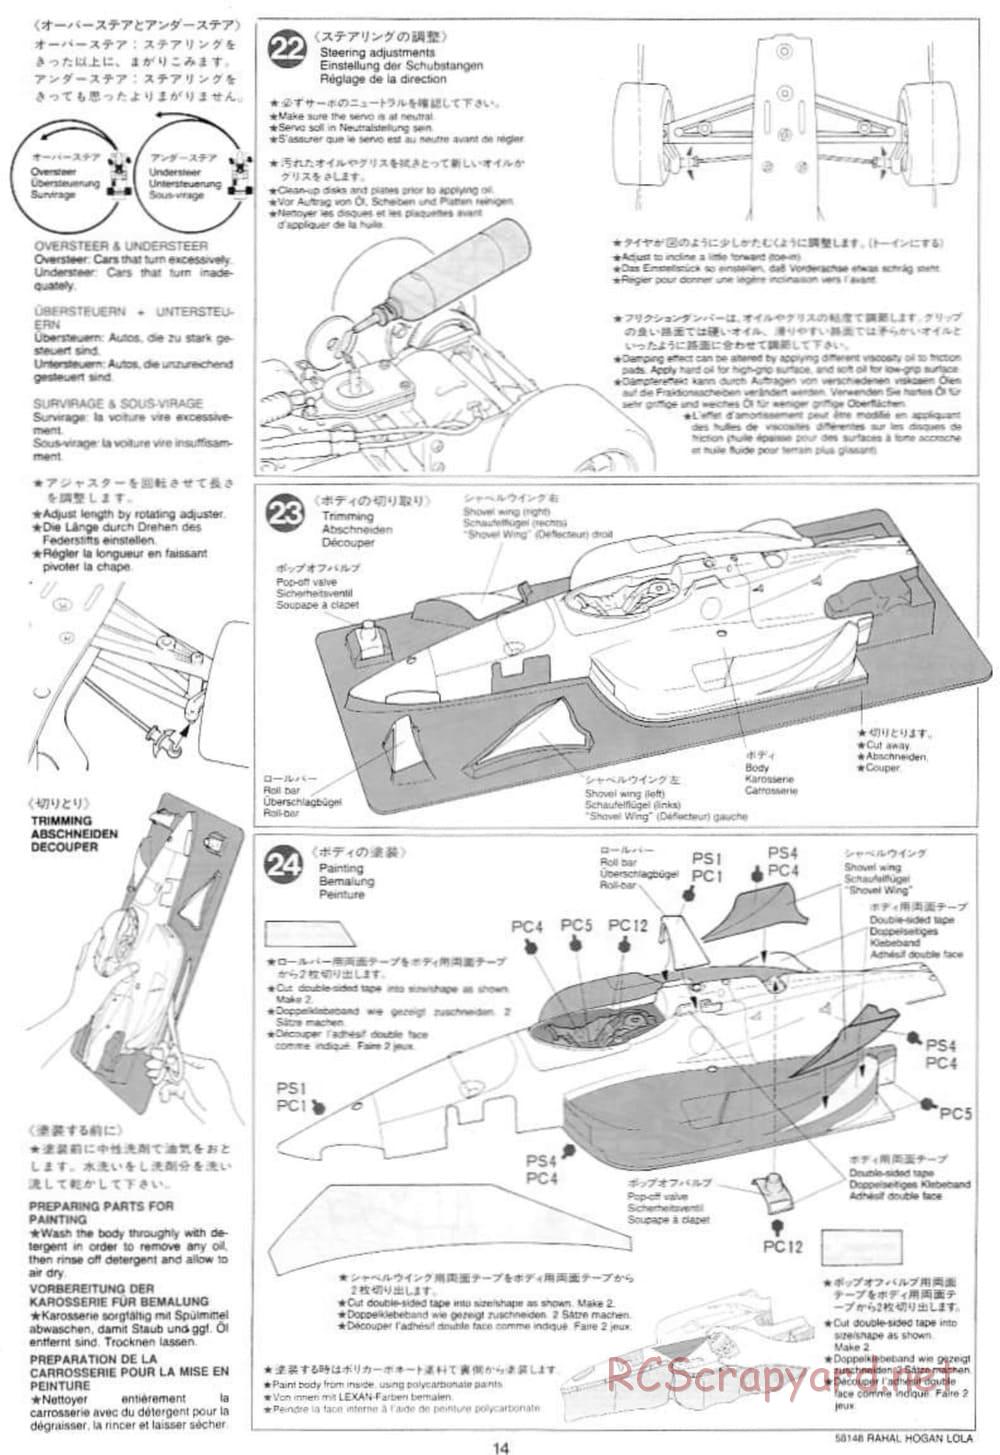 Tamiya - Rahal-Hogan Motorola Lola T94/00 Honda - F103L Chassis - Manual - Page 14